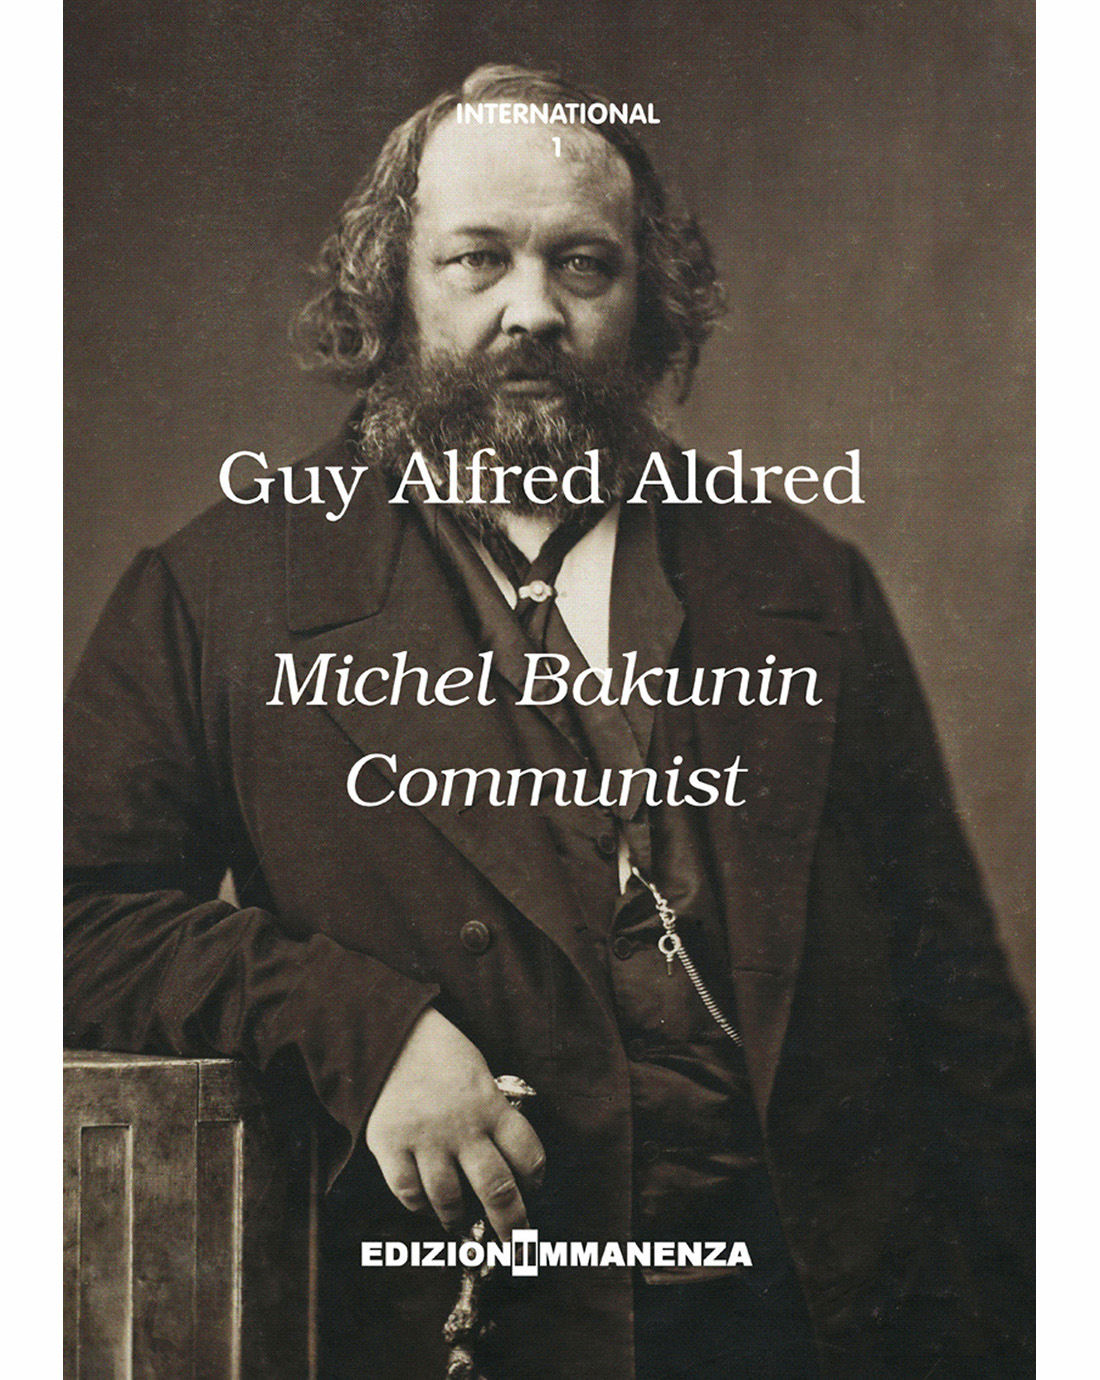 Michel Bakunin communist